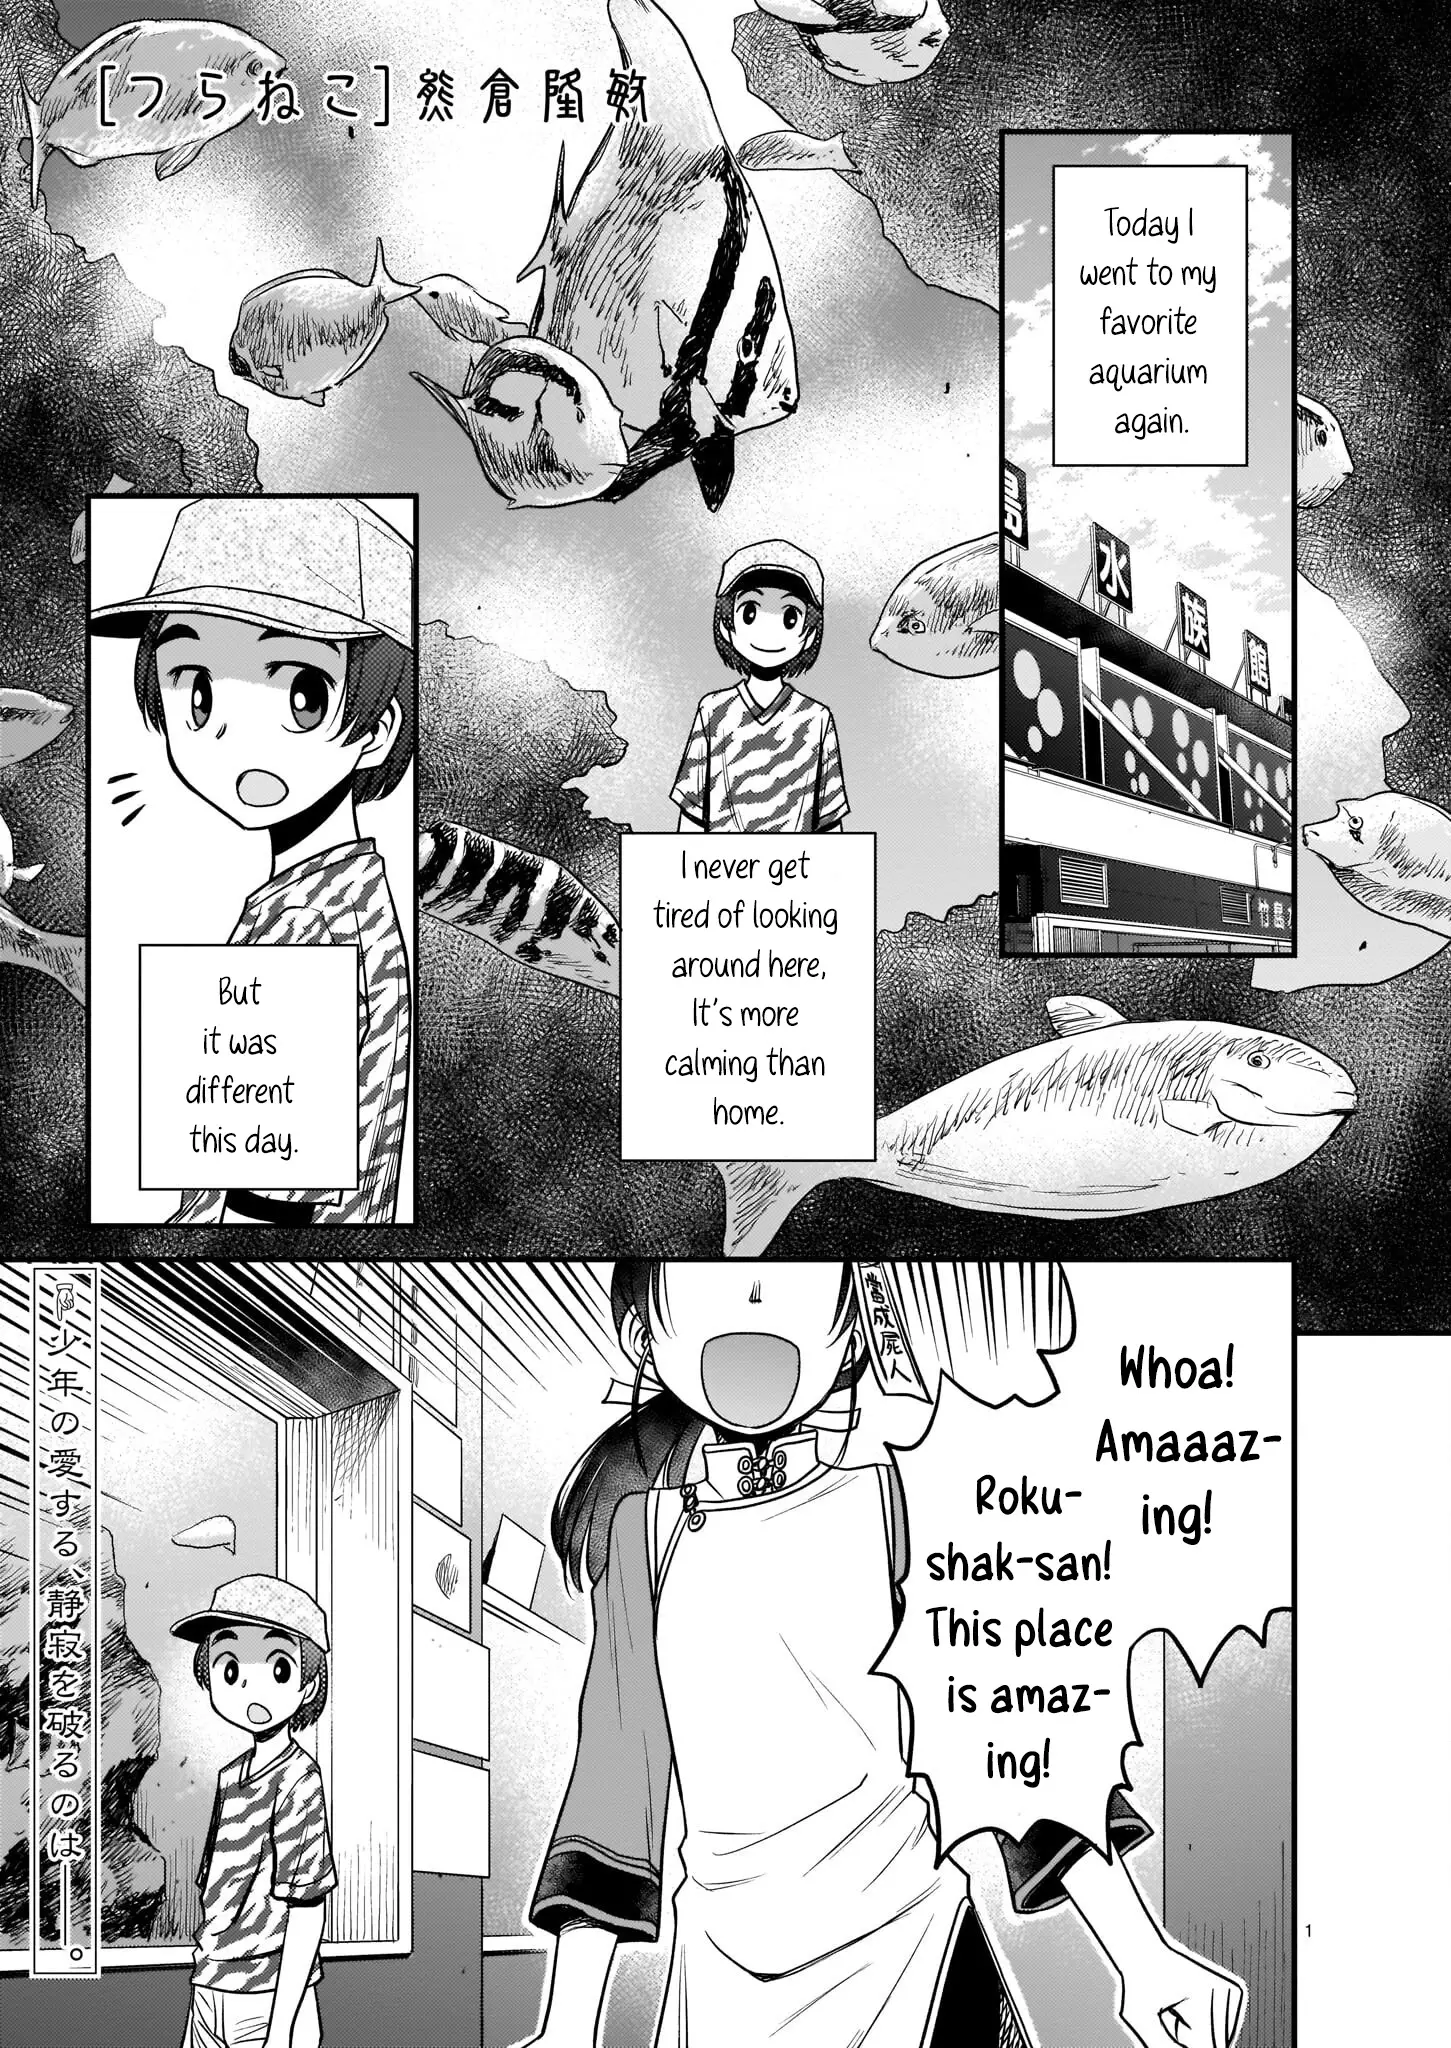 Tsuraneko - 6 page 1-5dc9047b